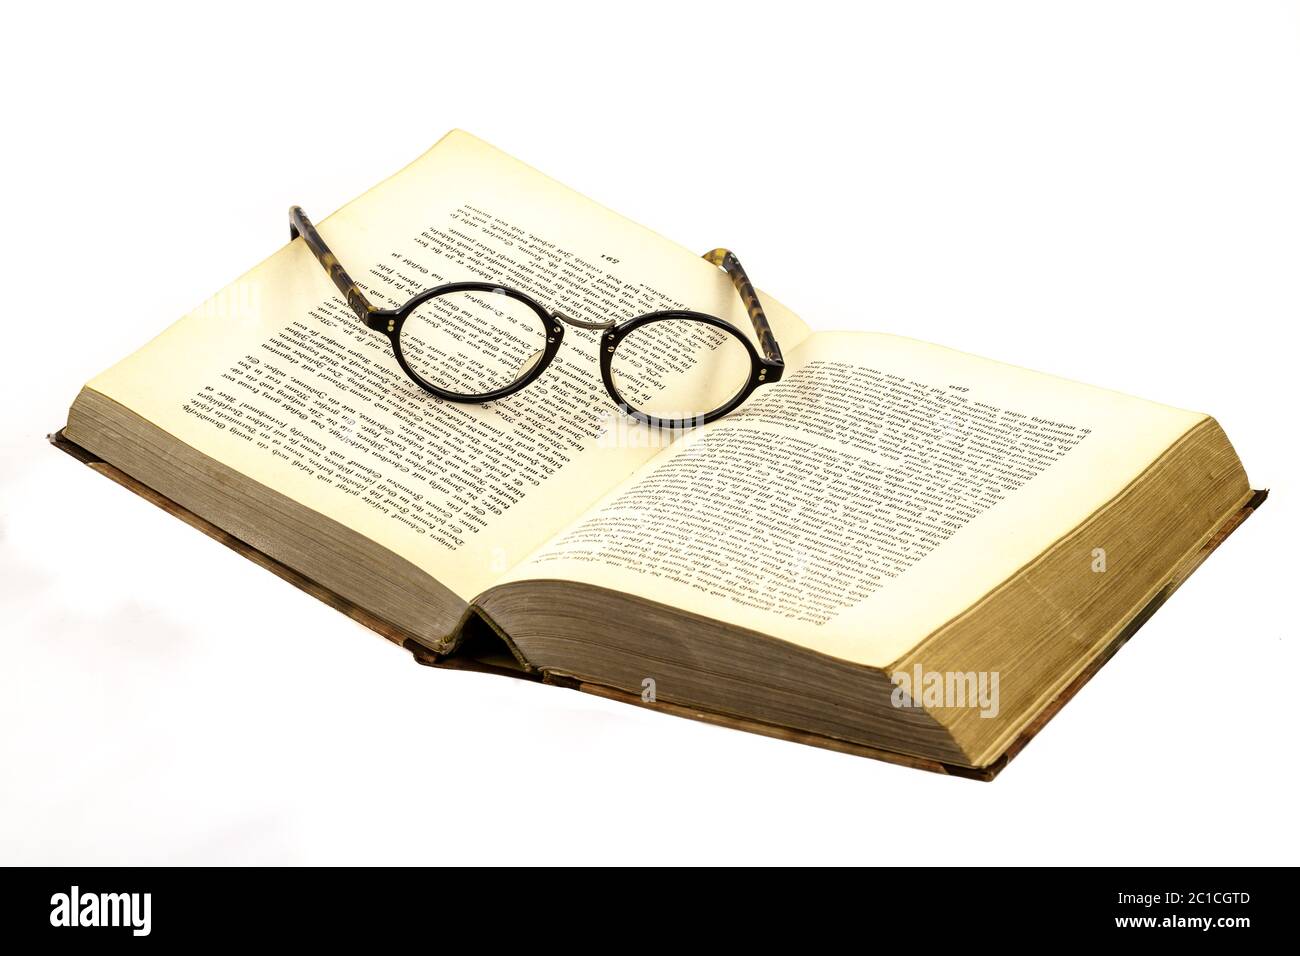 Gli occhiali nel libro con la scritta Old German Foto Stock